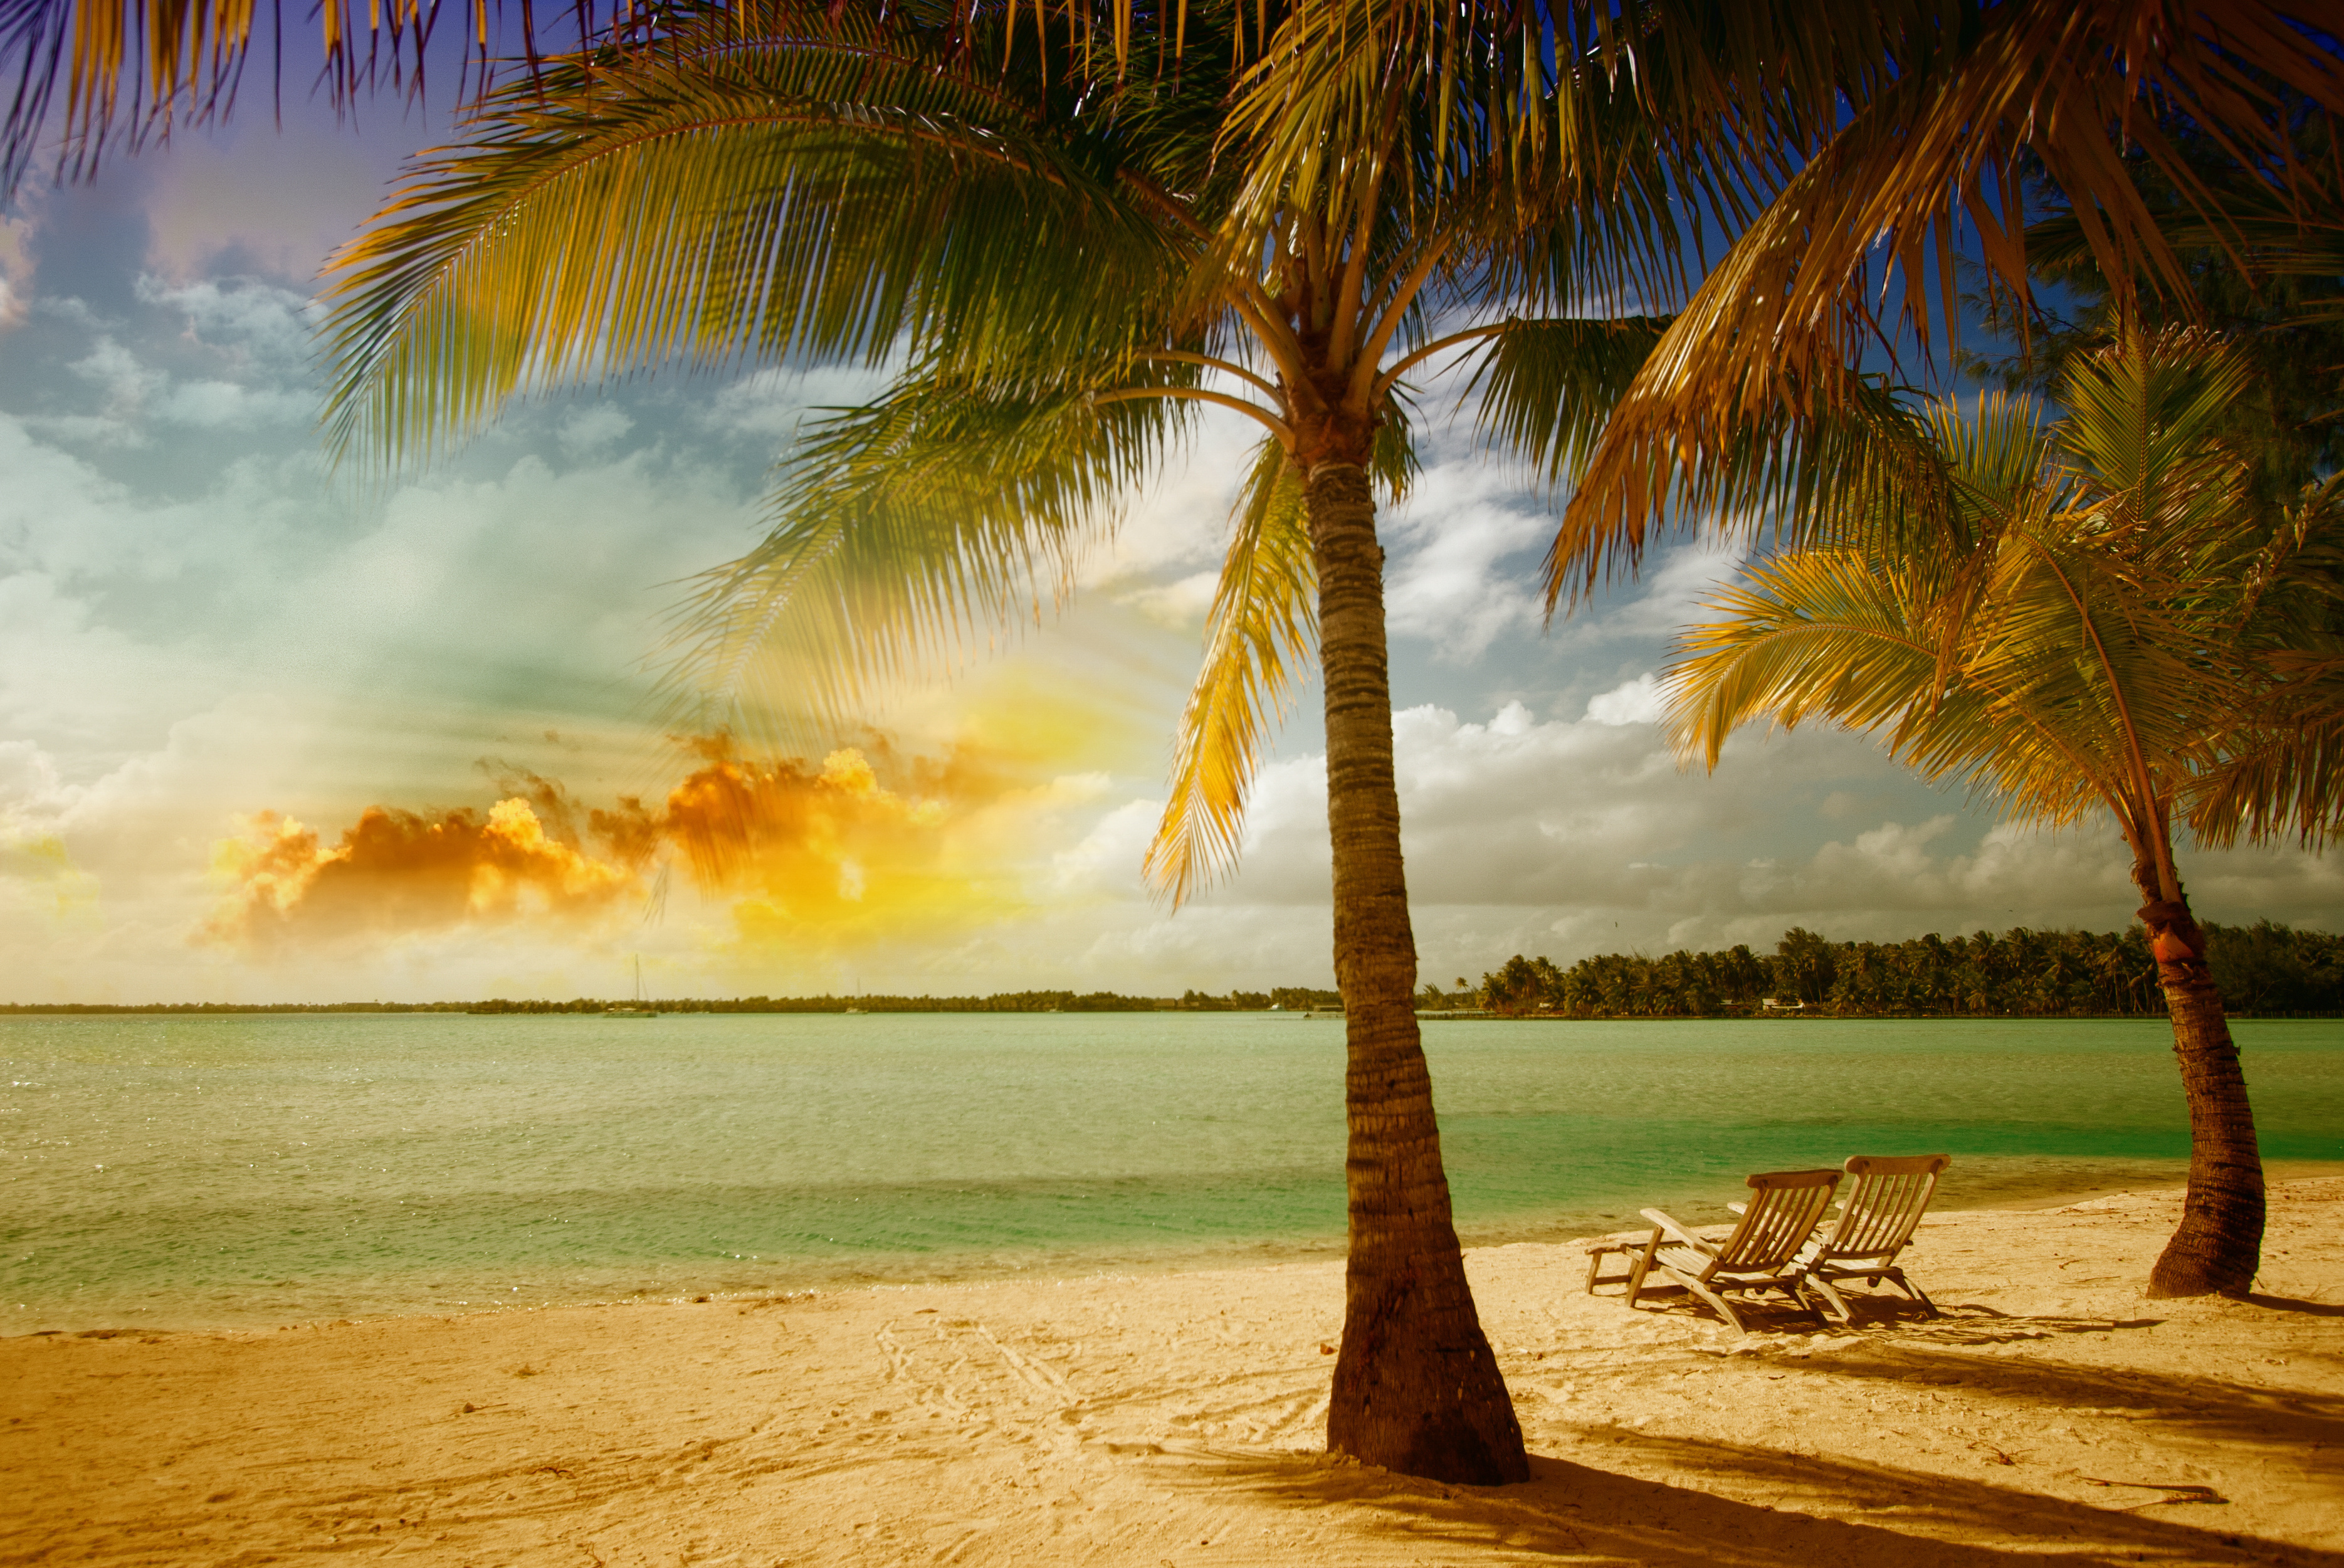 Beach tree. Море пальмы. Море пляж. Солнце пляж. Пейзаж с пальмами.